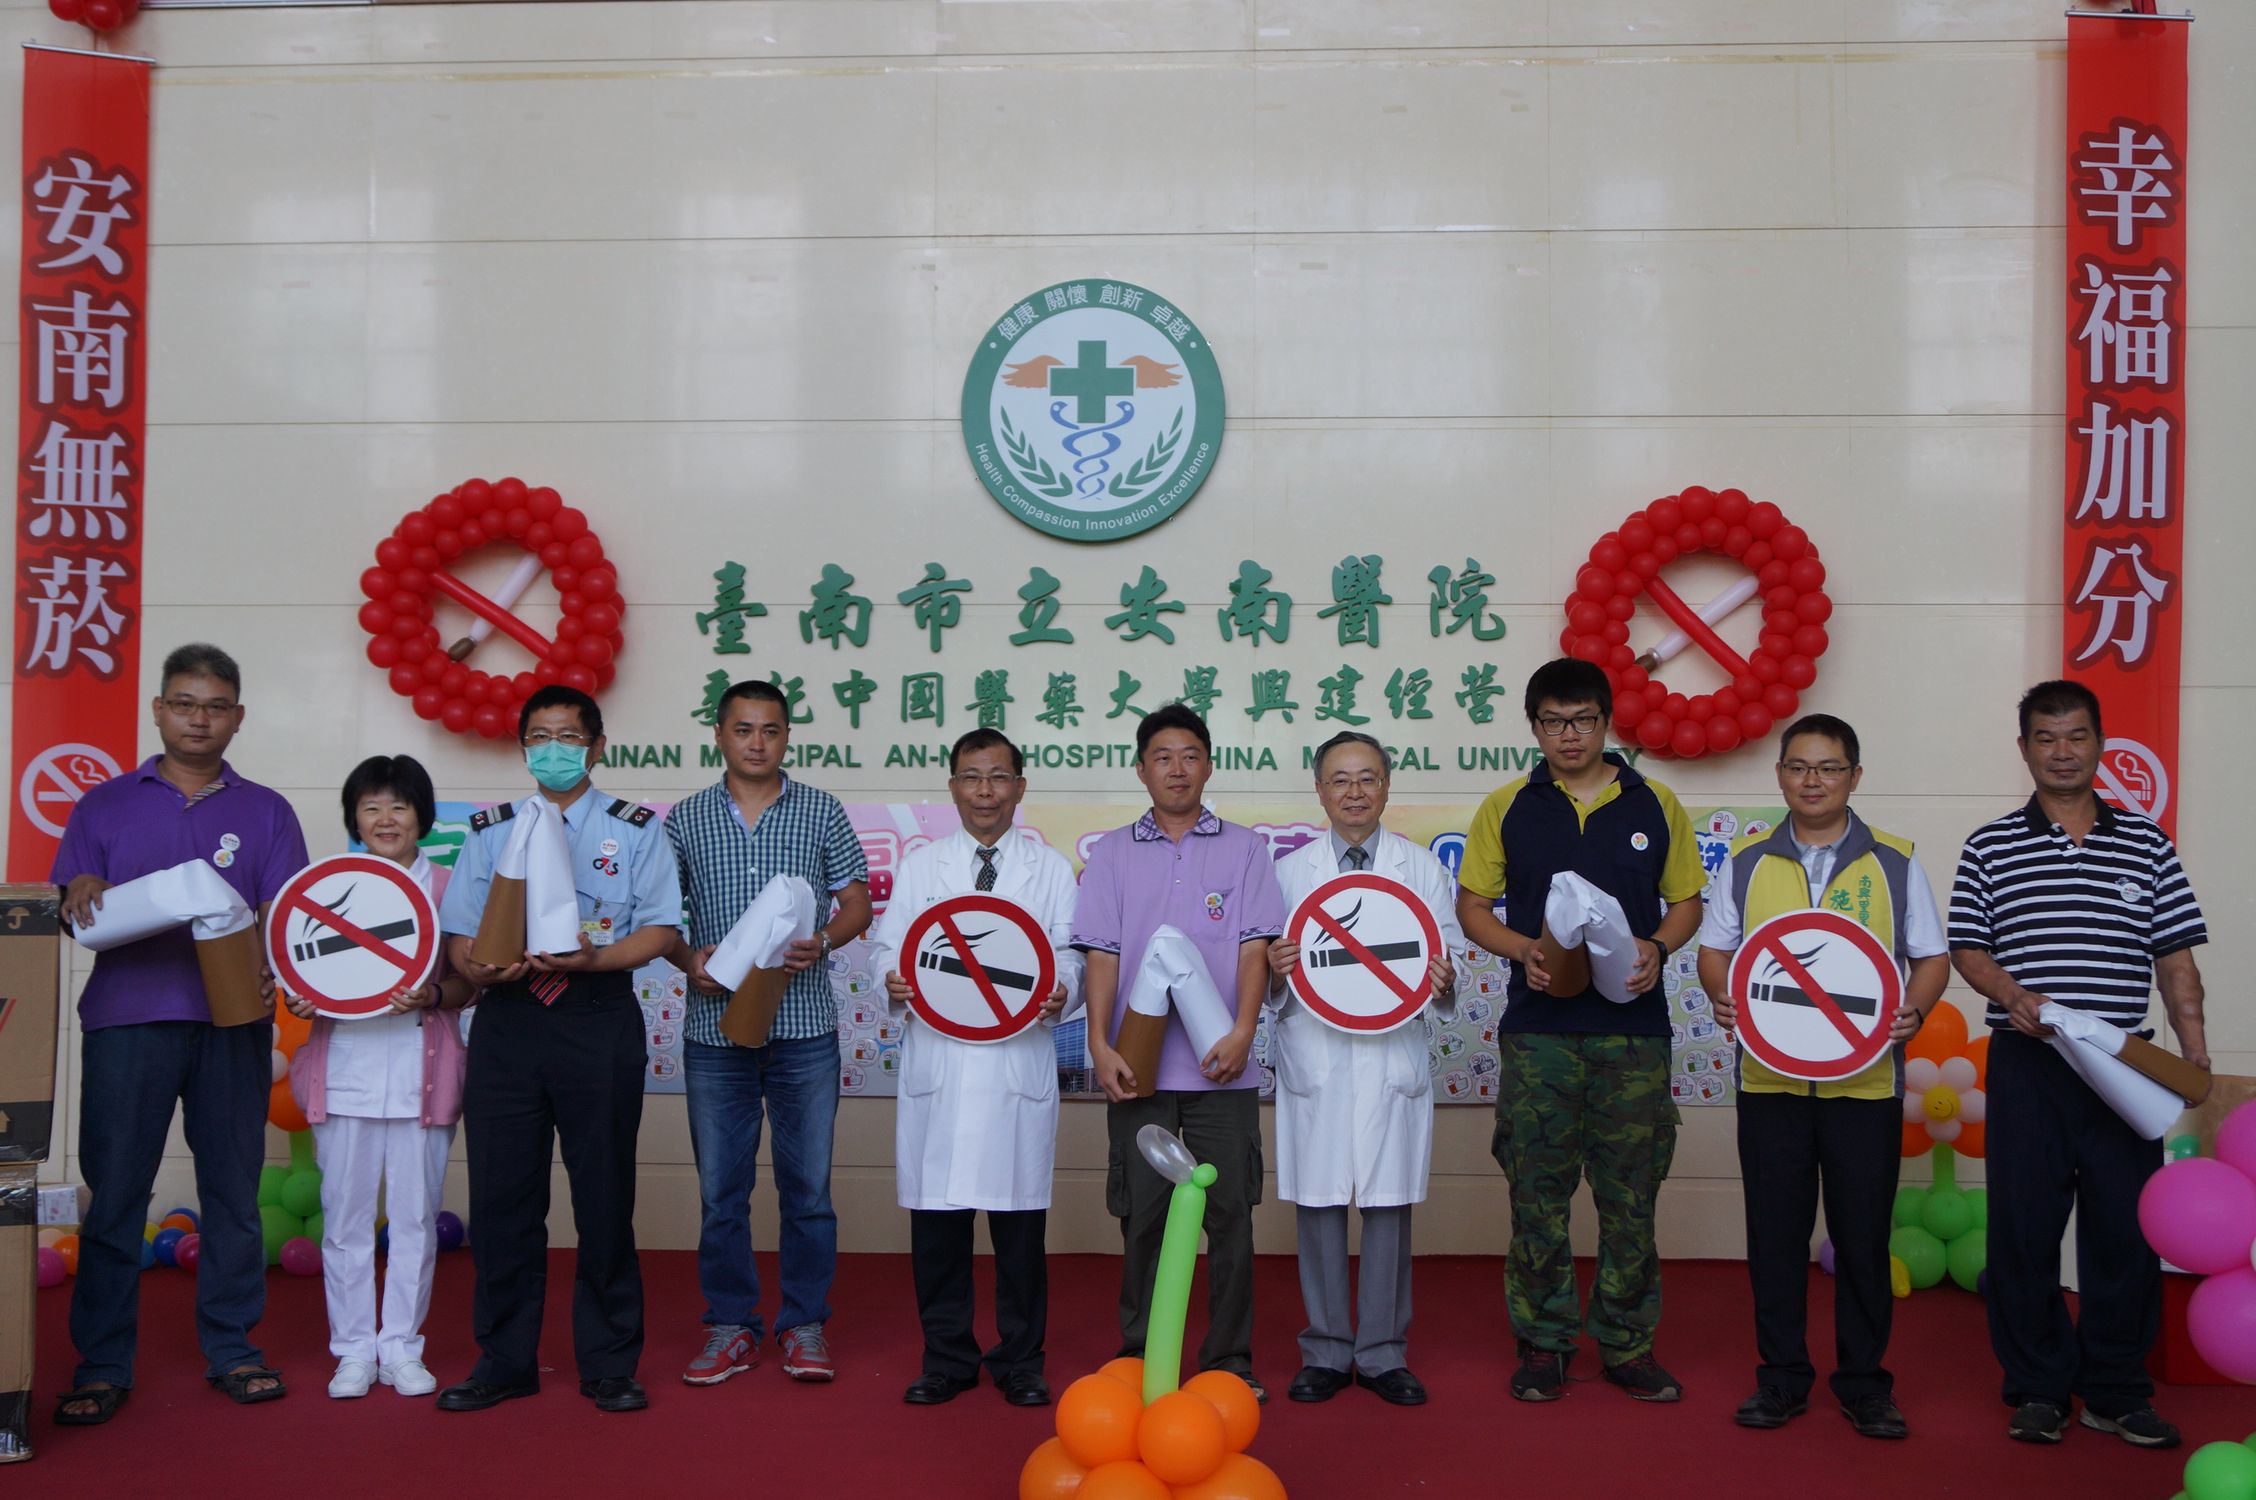 吳彬安副院長(左5)及安南區南興里施柏男里長(右2)一同宣誓戒掉菸害擁抱健康。